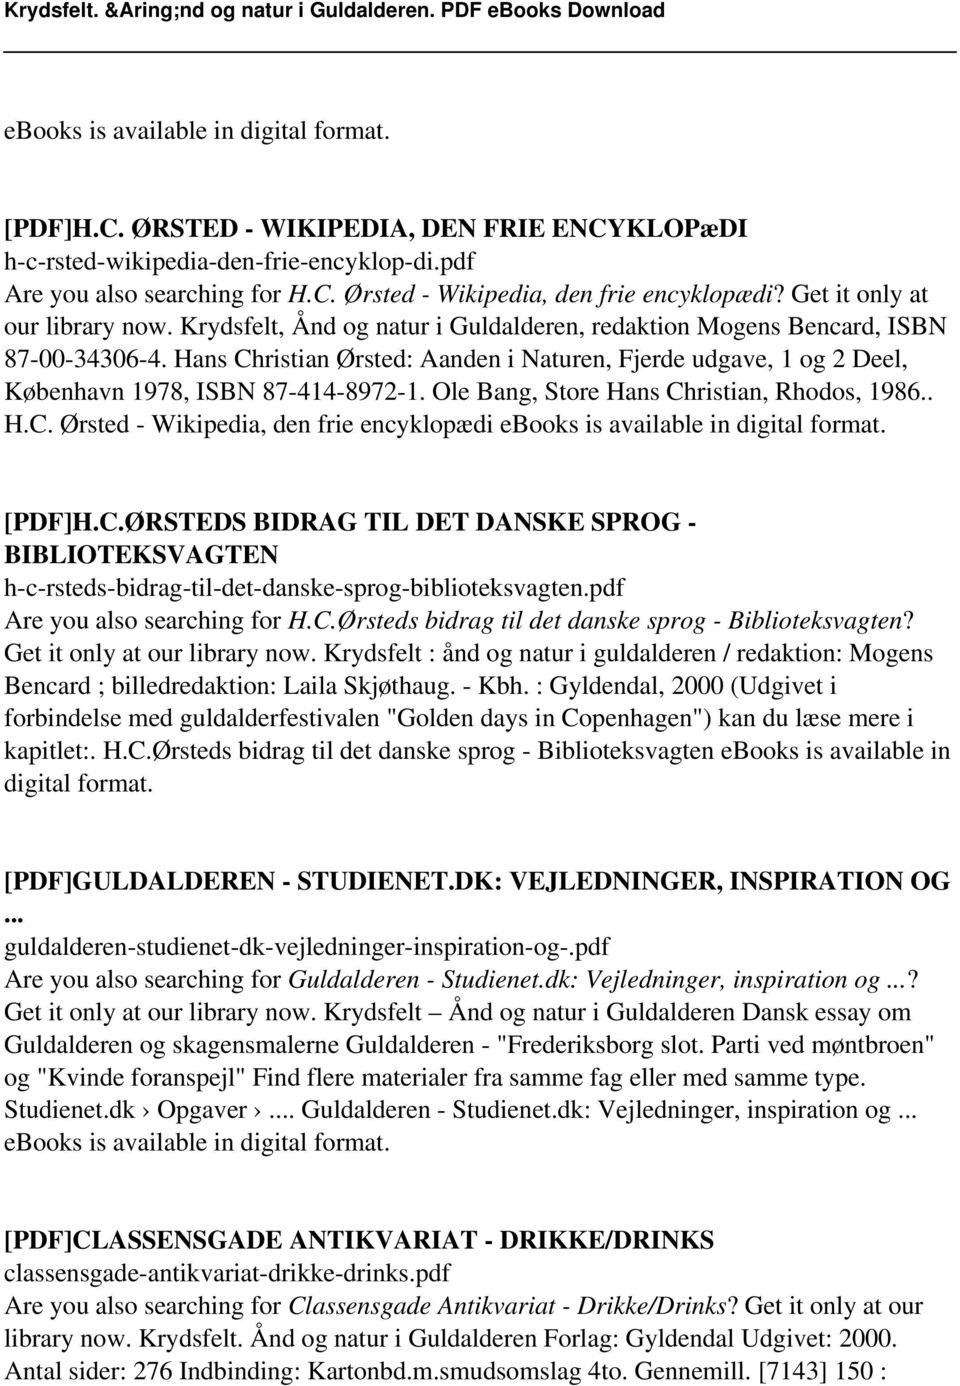 Hans Christian Ørsted: Aanden i Naturen, Fjerde udgave, 1 og 2 Deel, København 1978, ISBN 87-414-8972-1. Ole Bang, Store Hans Christian, Rhodos, 1986.. H.C. Ørsted - Wikipedia, den frie encyklopædi ebooks is available in digital format.